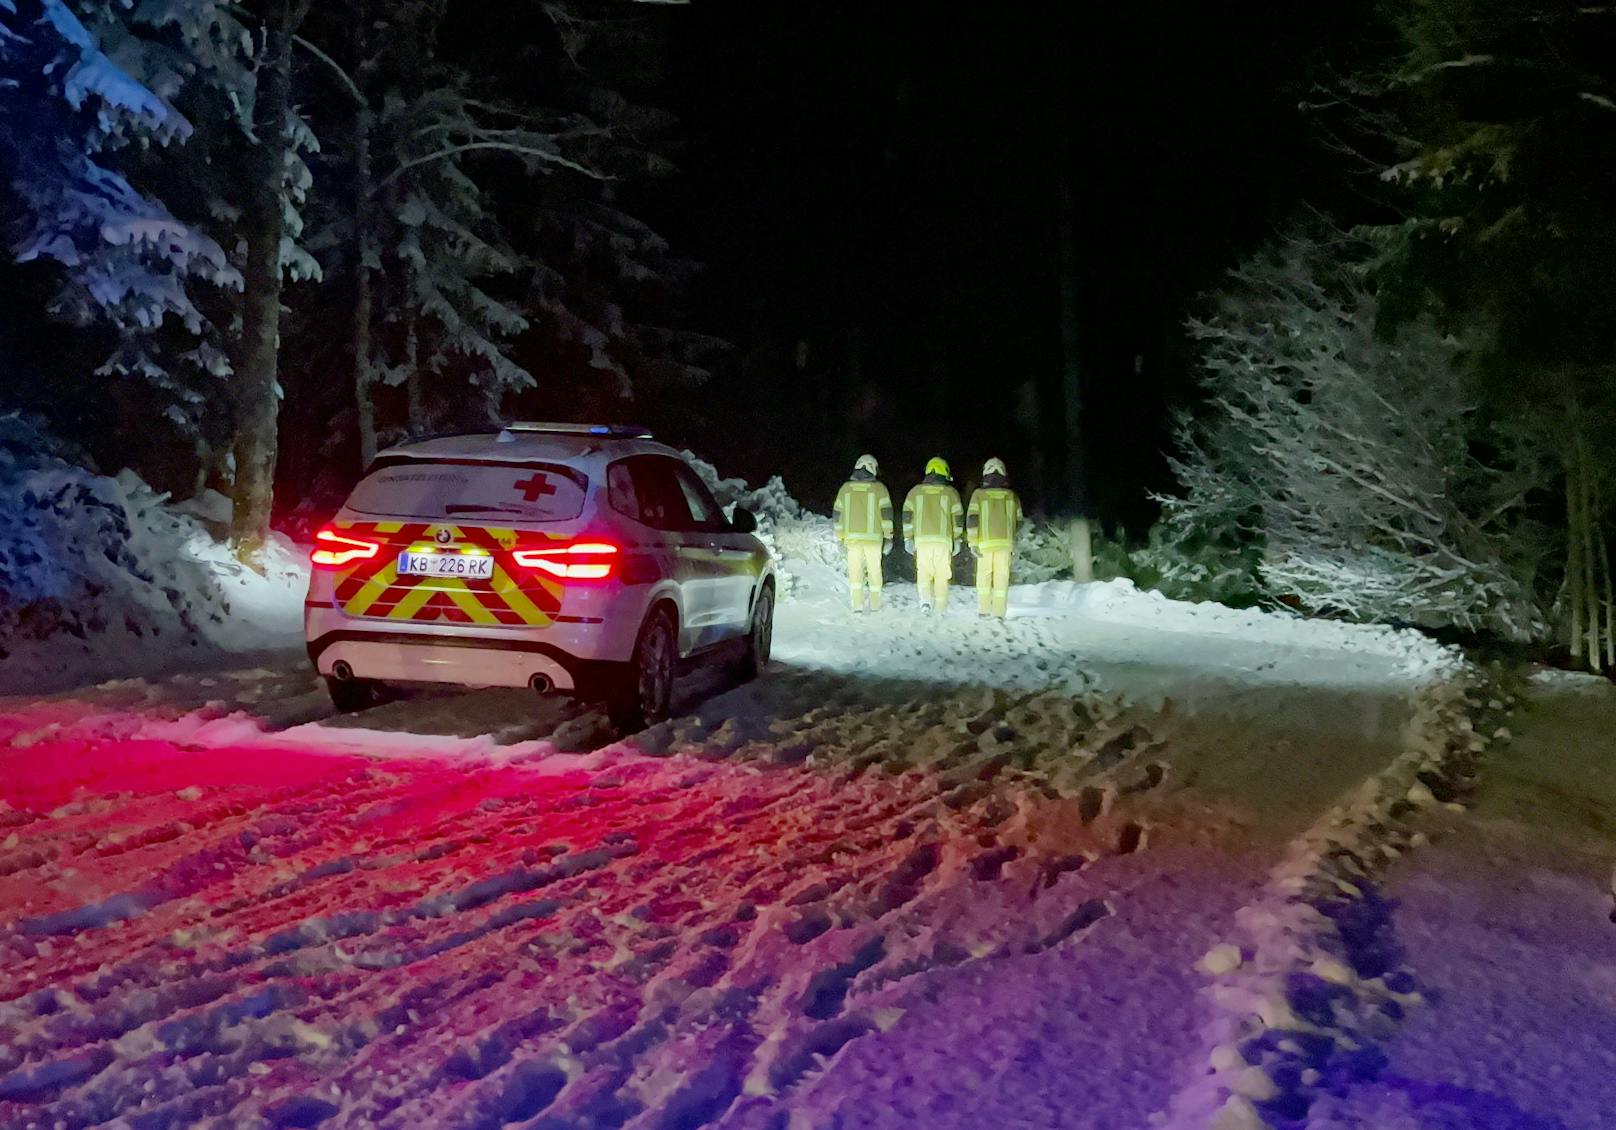 Aufgrund der schneebedeckten Fahrbahnverhältnissen rutschte das Fahrzeug bei einer Kehre über den linken Fahrbahnrand und kam circa 30 Meter im stark abschüssigen Gelände zum Stillstand.